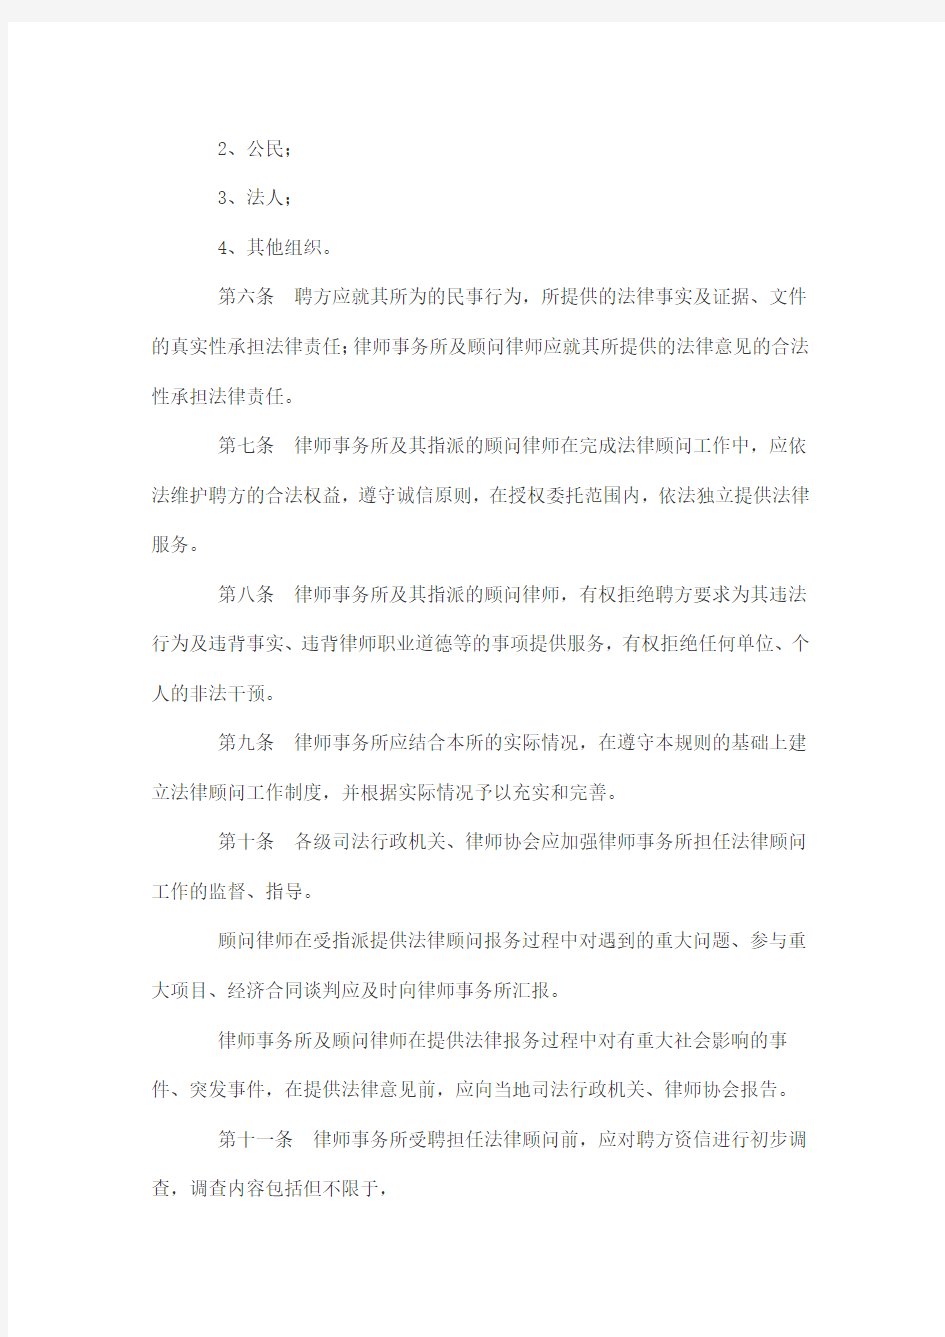 中华全国律师协会企业法律顾问服务规范